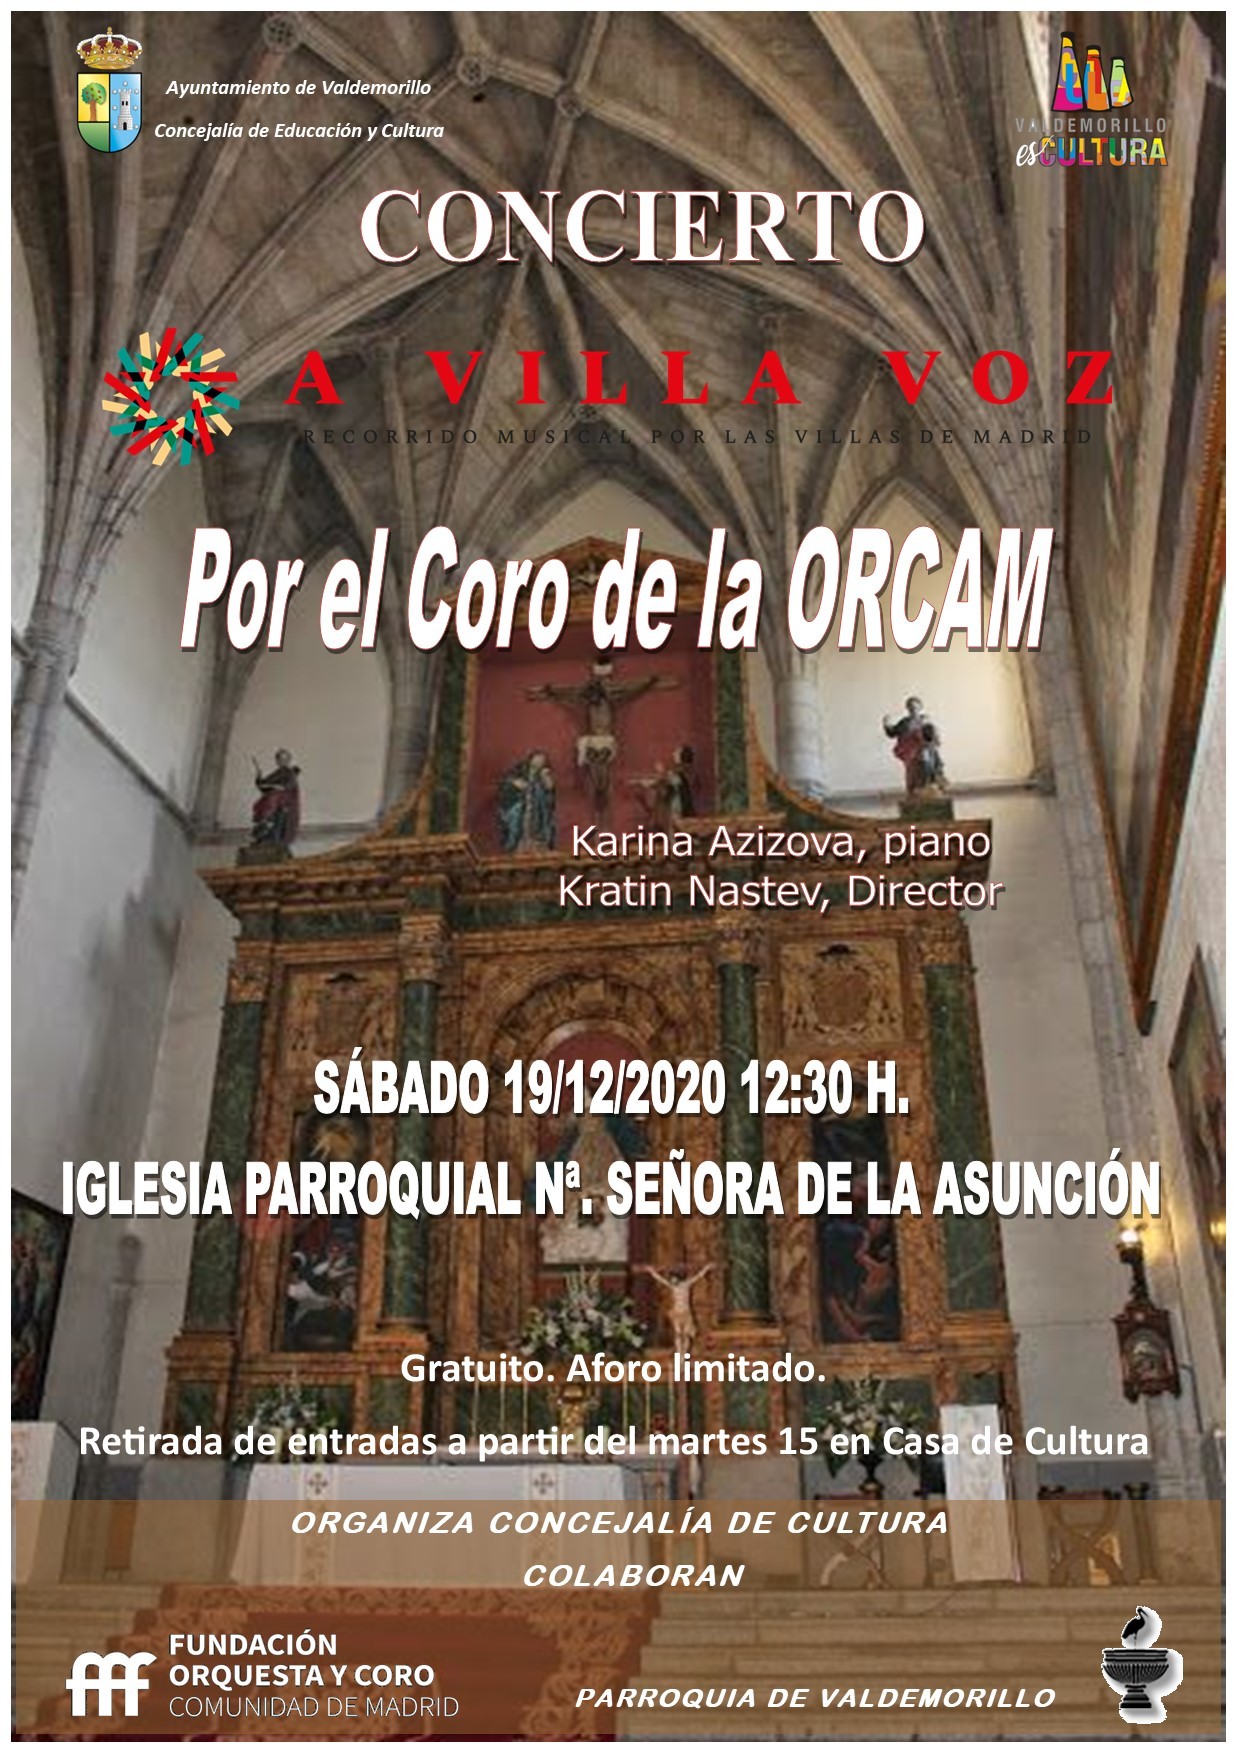 El coro de la Comunidad de Madrid, este sábado 19  en la iglesia de Nuestra señora de la Asunción de Valdemorillo  para invitar a disfrutar de un singular viaje sonoro  en las notas de ‘A villa voz’,  “un concierto único en un escenario excepcional”